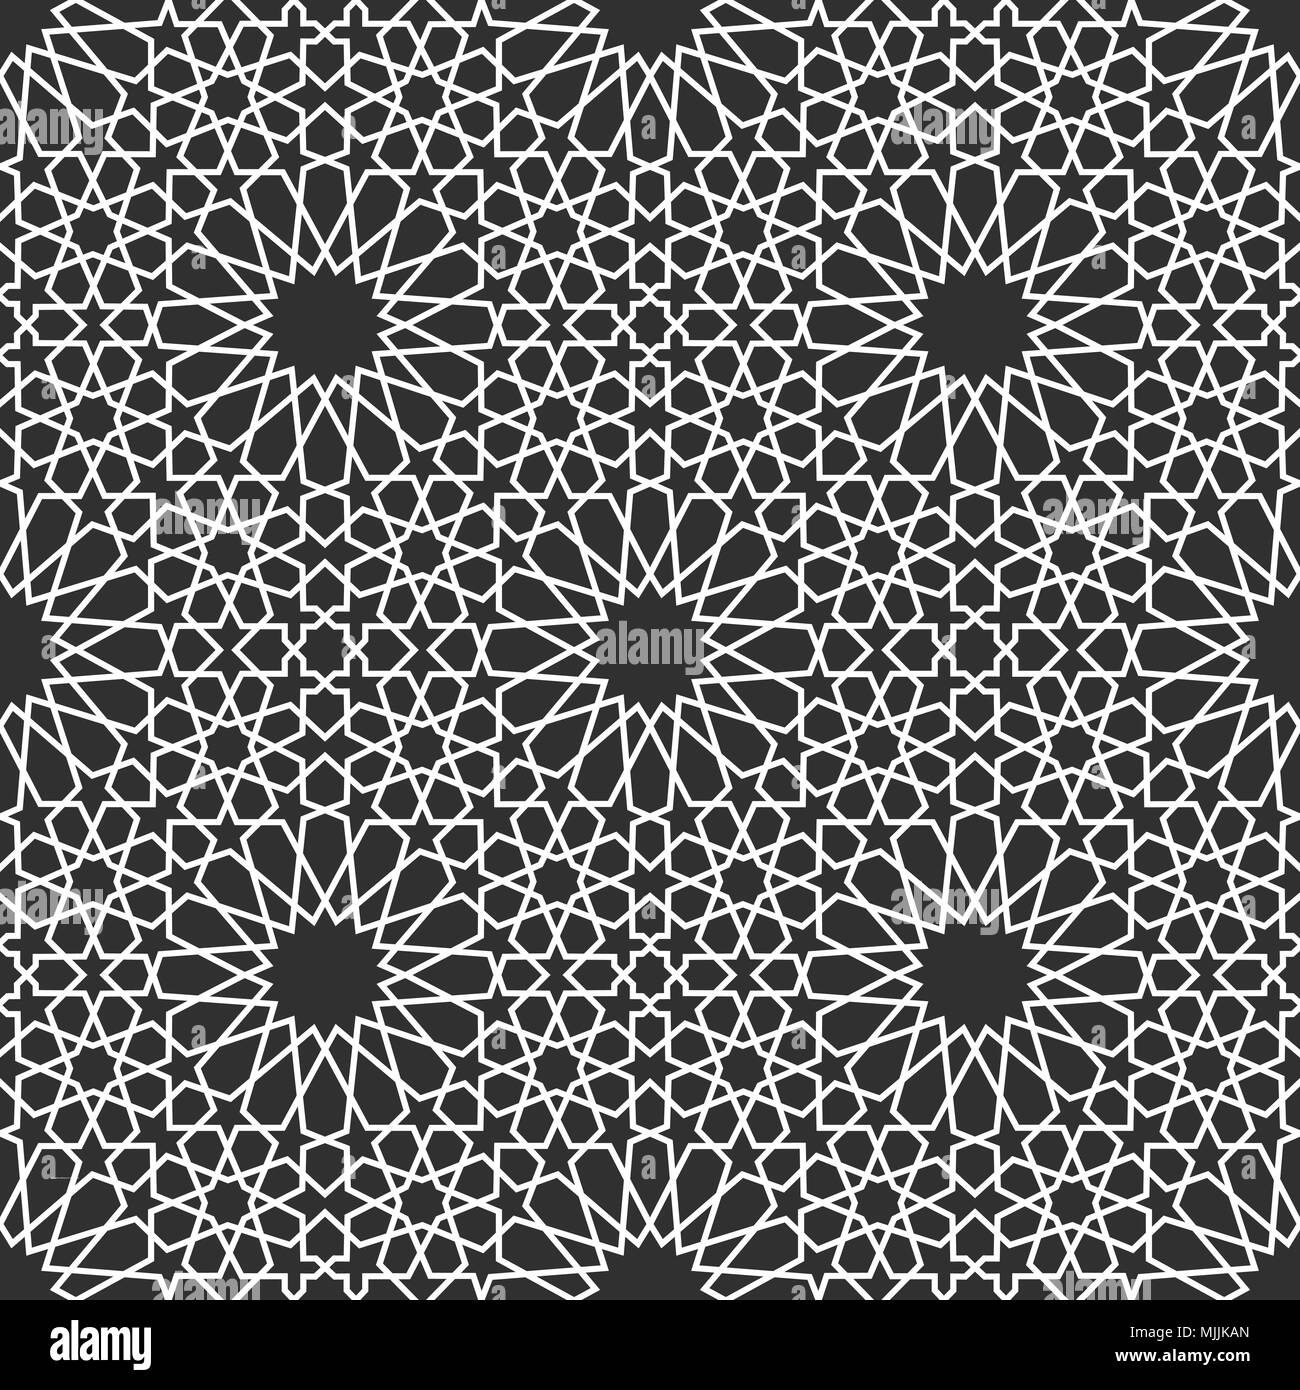 Motif géométrique transparente en arabe. Abstract vector background islamique. Illustration de Vecteur